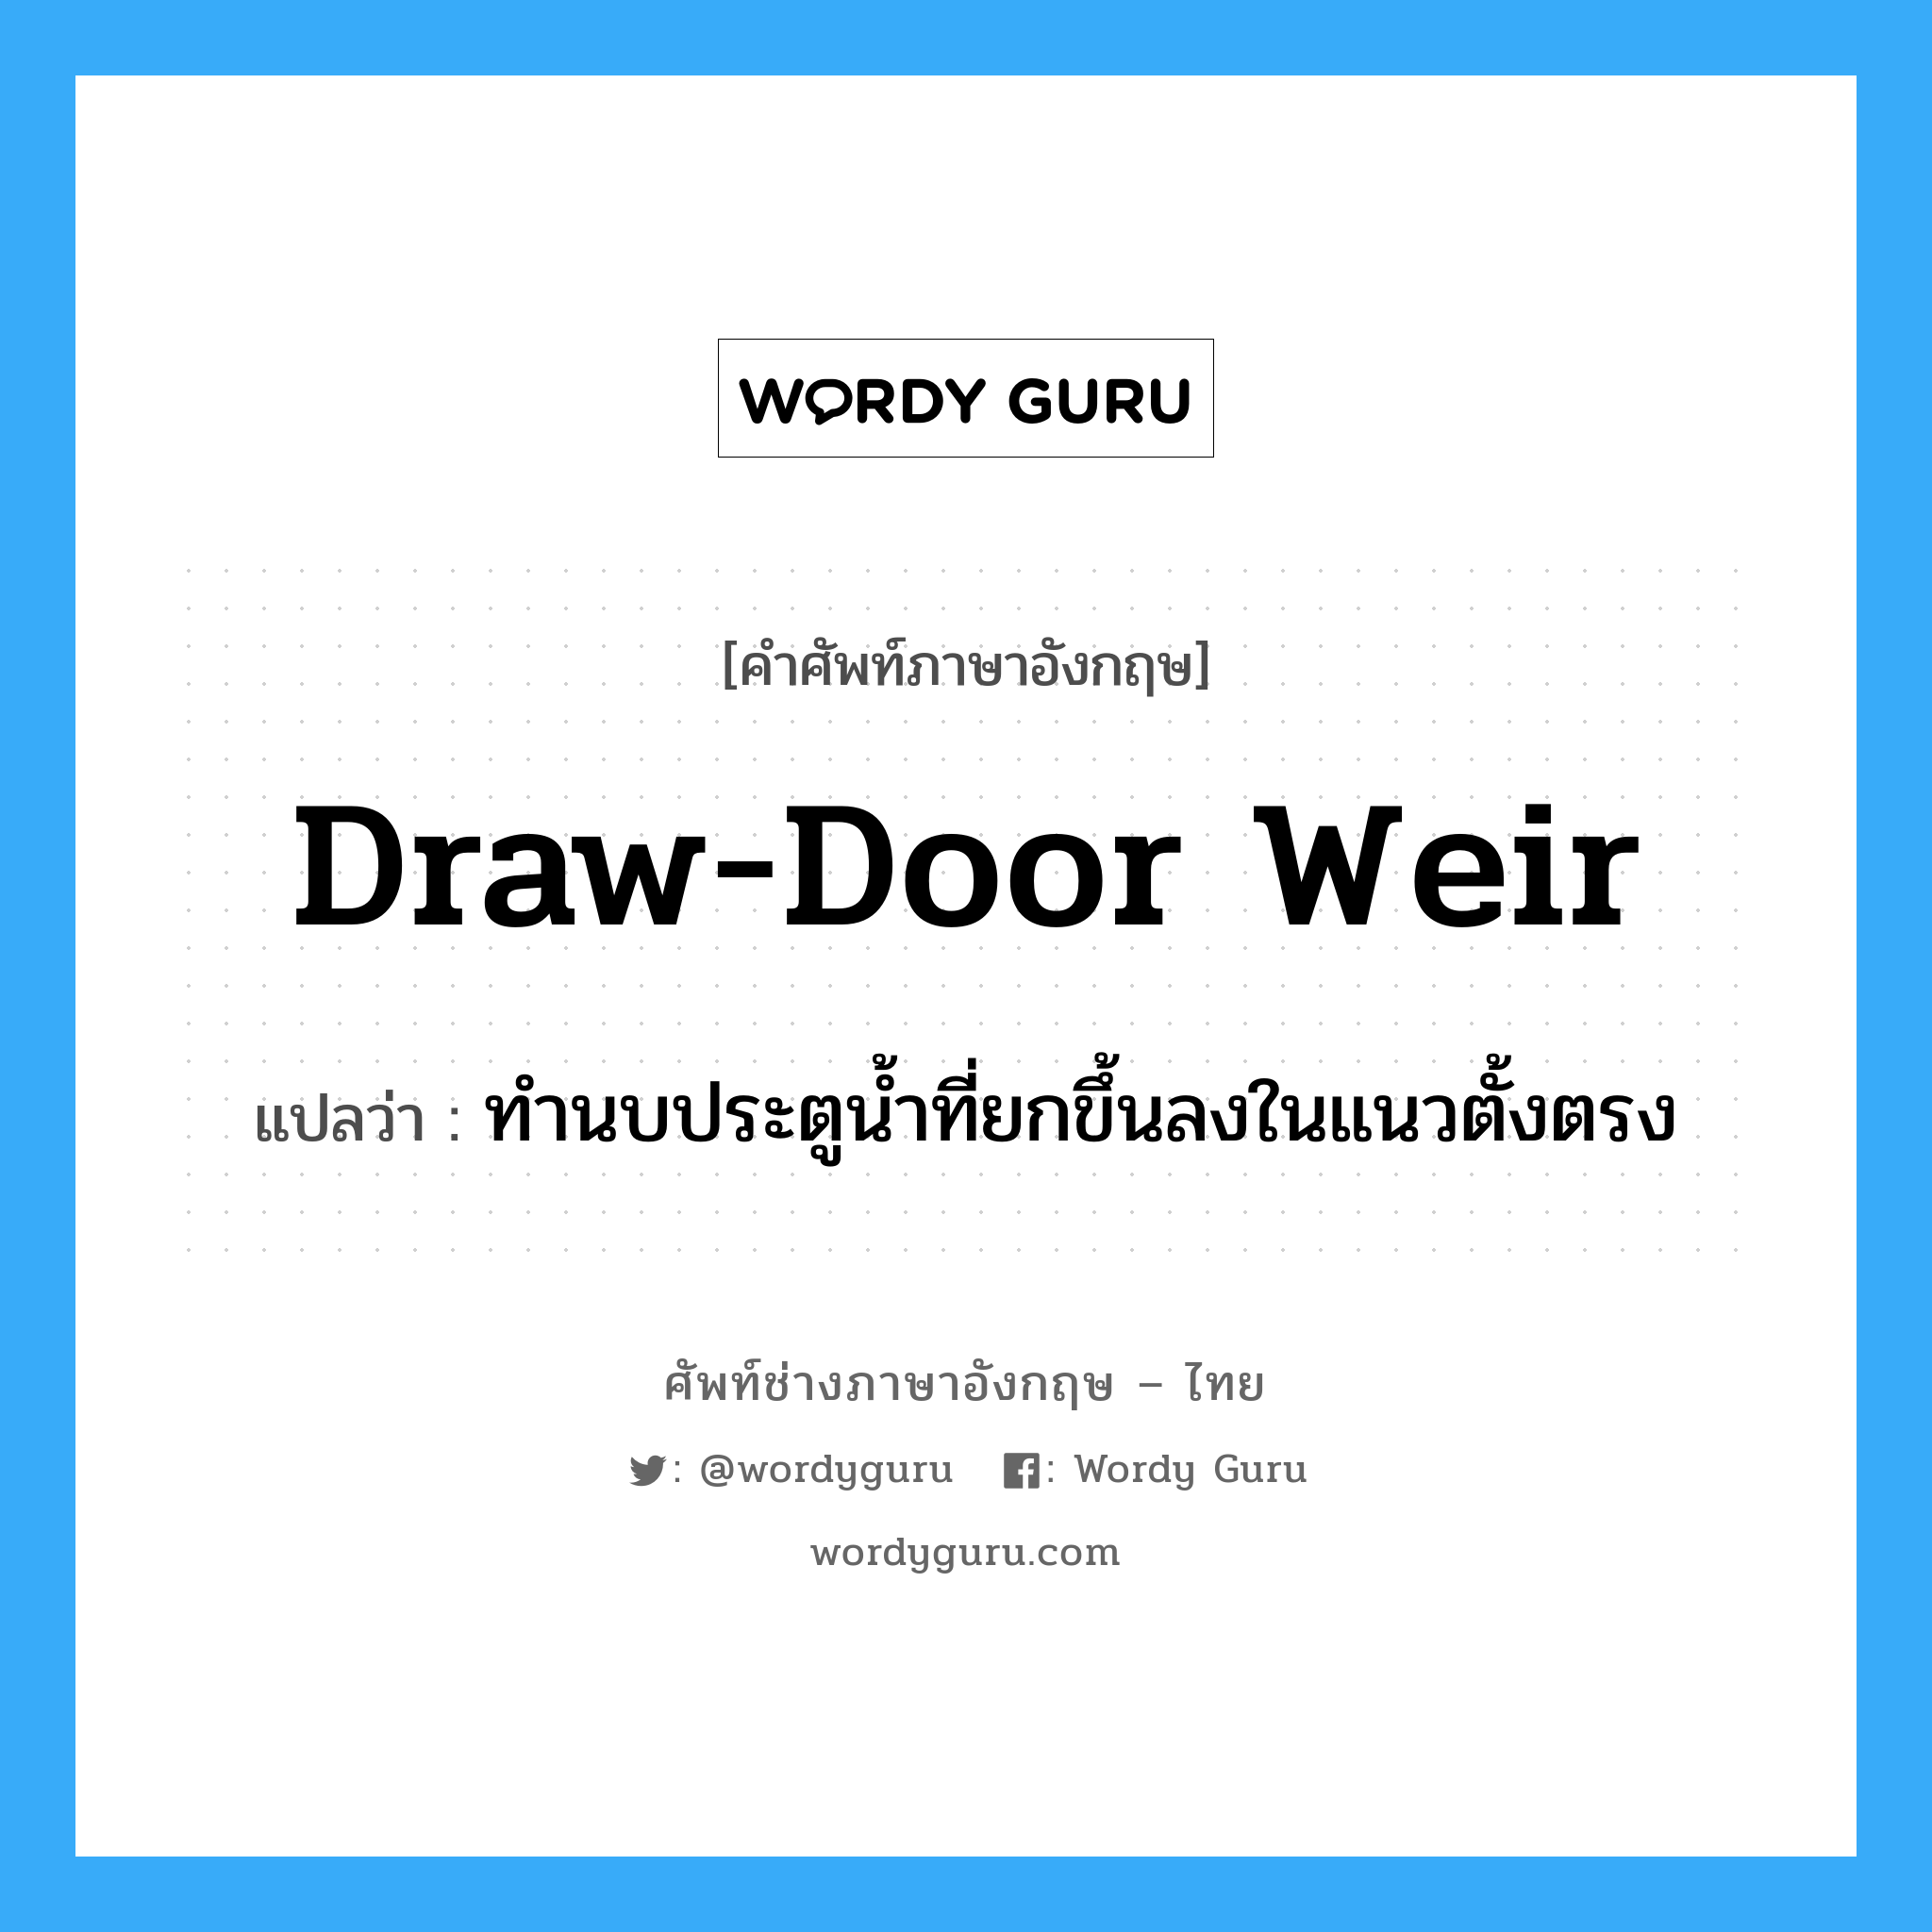 draw-door weir แปลว่า?, คำศัพท์ช่างภาษาอังกฤษ - ไทย draw-door weir คำศัพท์ภาษาอังกฤษ draw-door weir แปลว่า ทำนบประตูน้ำที่ยกขึ้นลงในแนวตั้งตรง